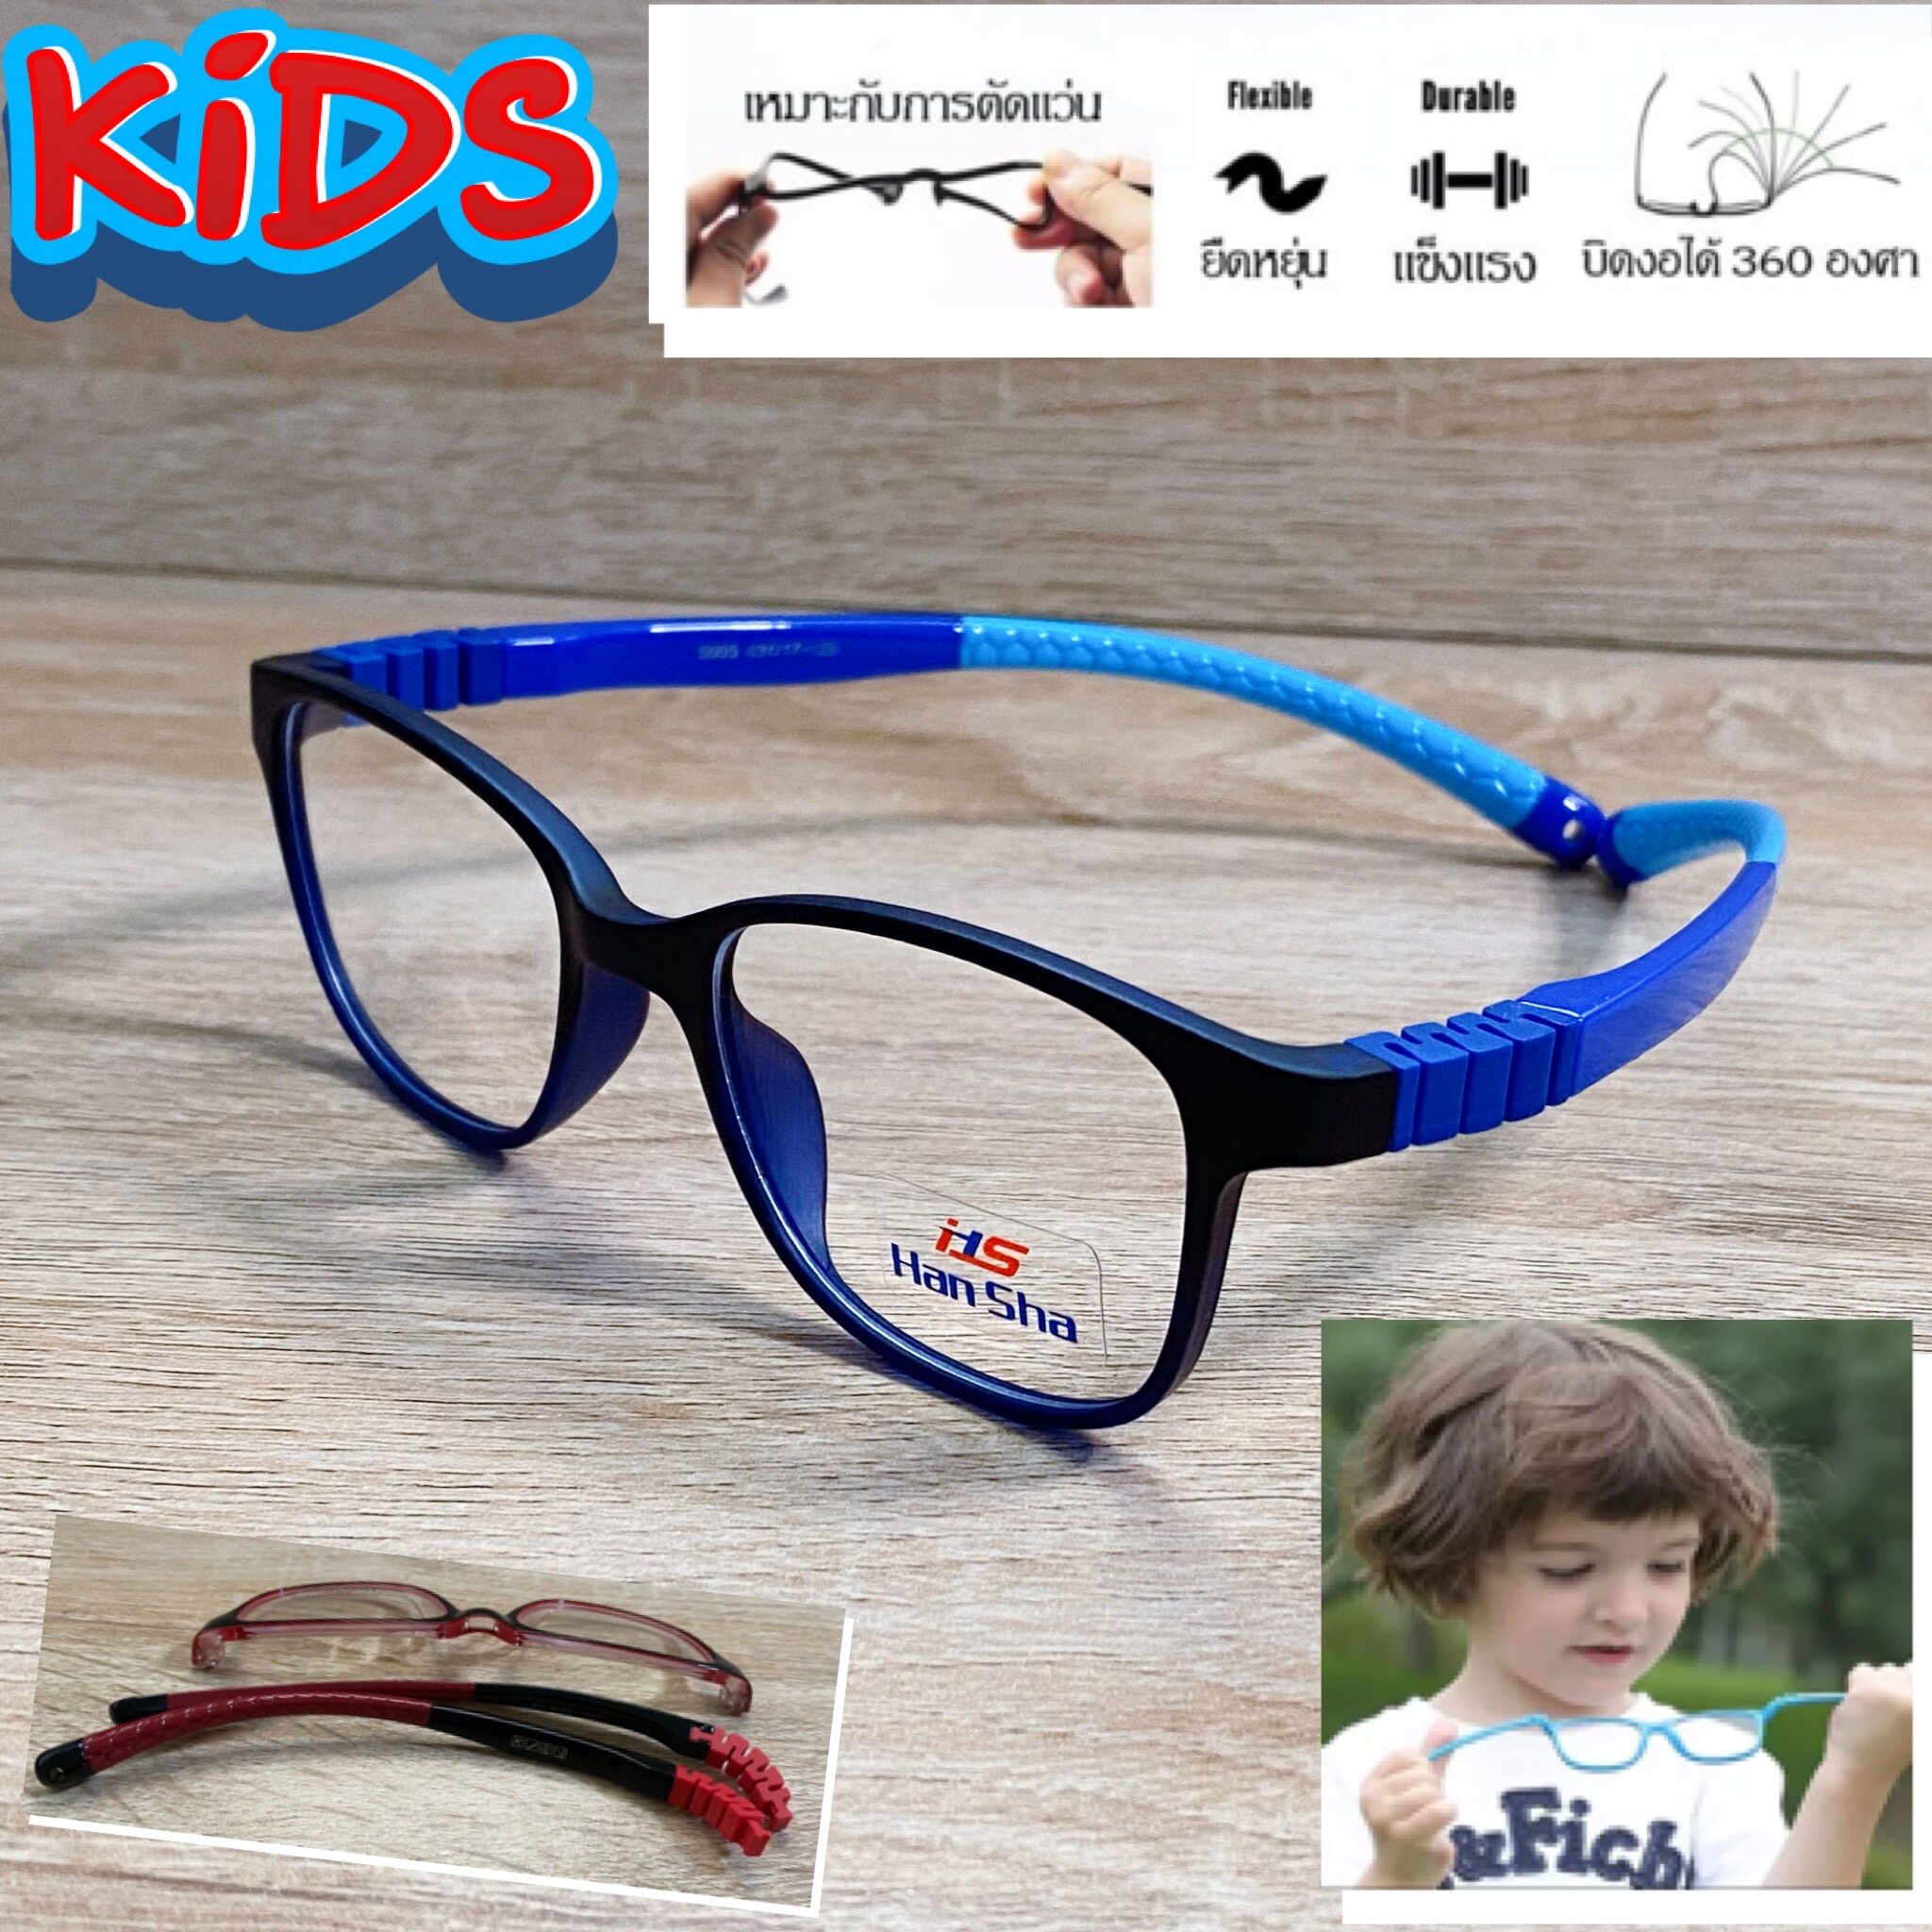 แว่นตาเด็ก กรอบแว่นตาเด็ก สำหรับตัดเลนส์ แว่นตา Han Sha รุ่น 5005 สีดำตัดฟ้า ขาไม่ใช้น็อต ยืดหยุ่น ถอดขาเปลี่ยนได้ วัสดุ TR 90 เบา ไม่แตกหัก